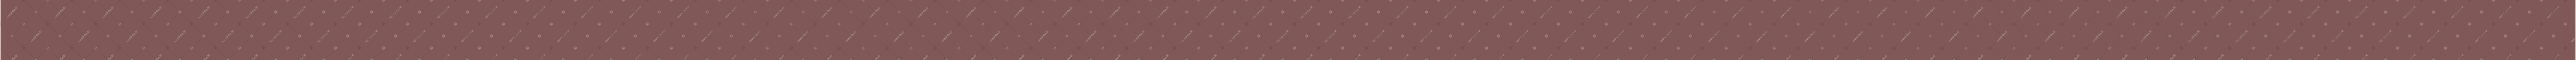 brown stripe Illustration in PNG, SVG